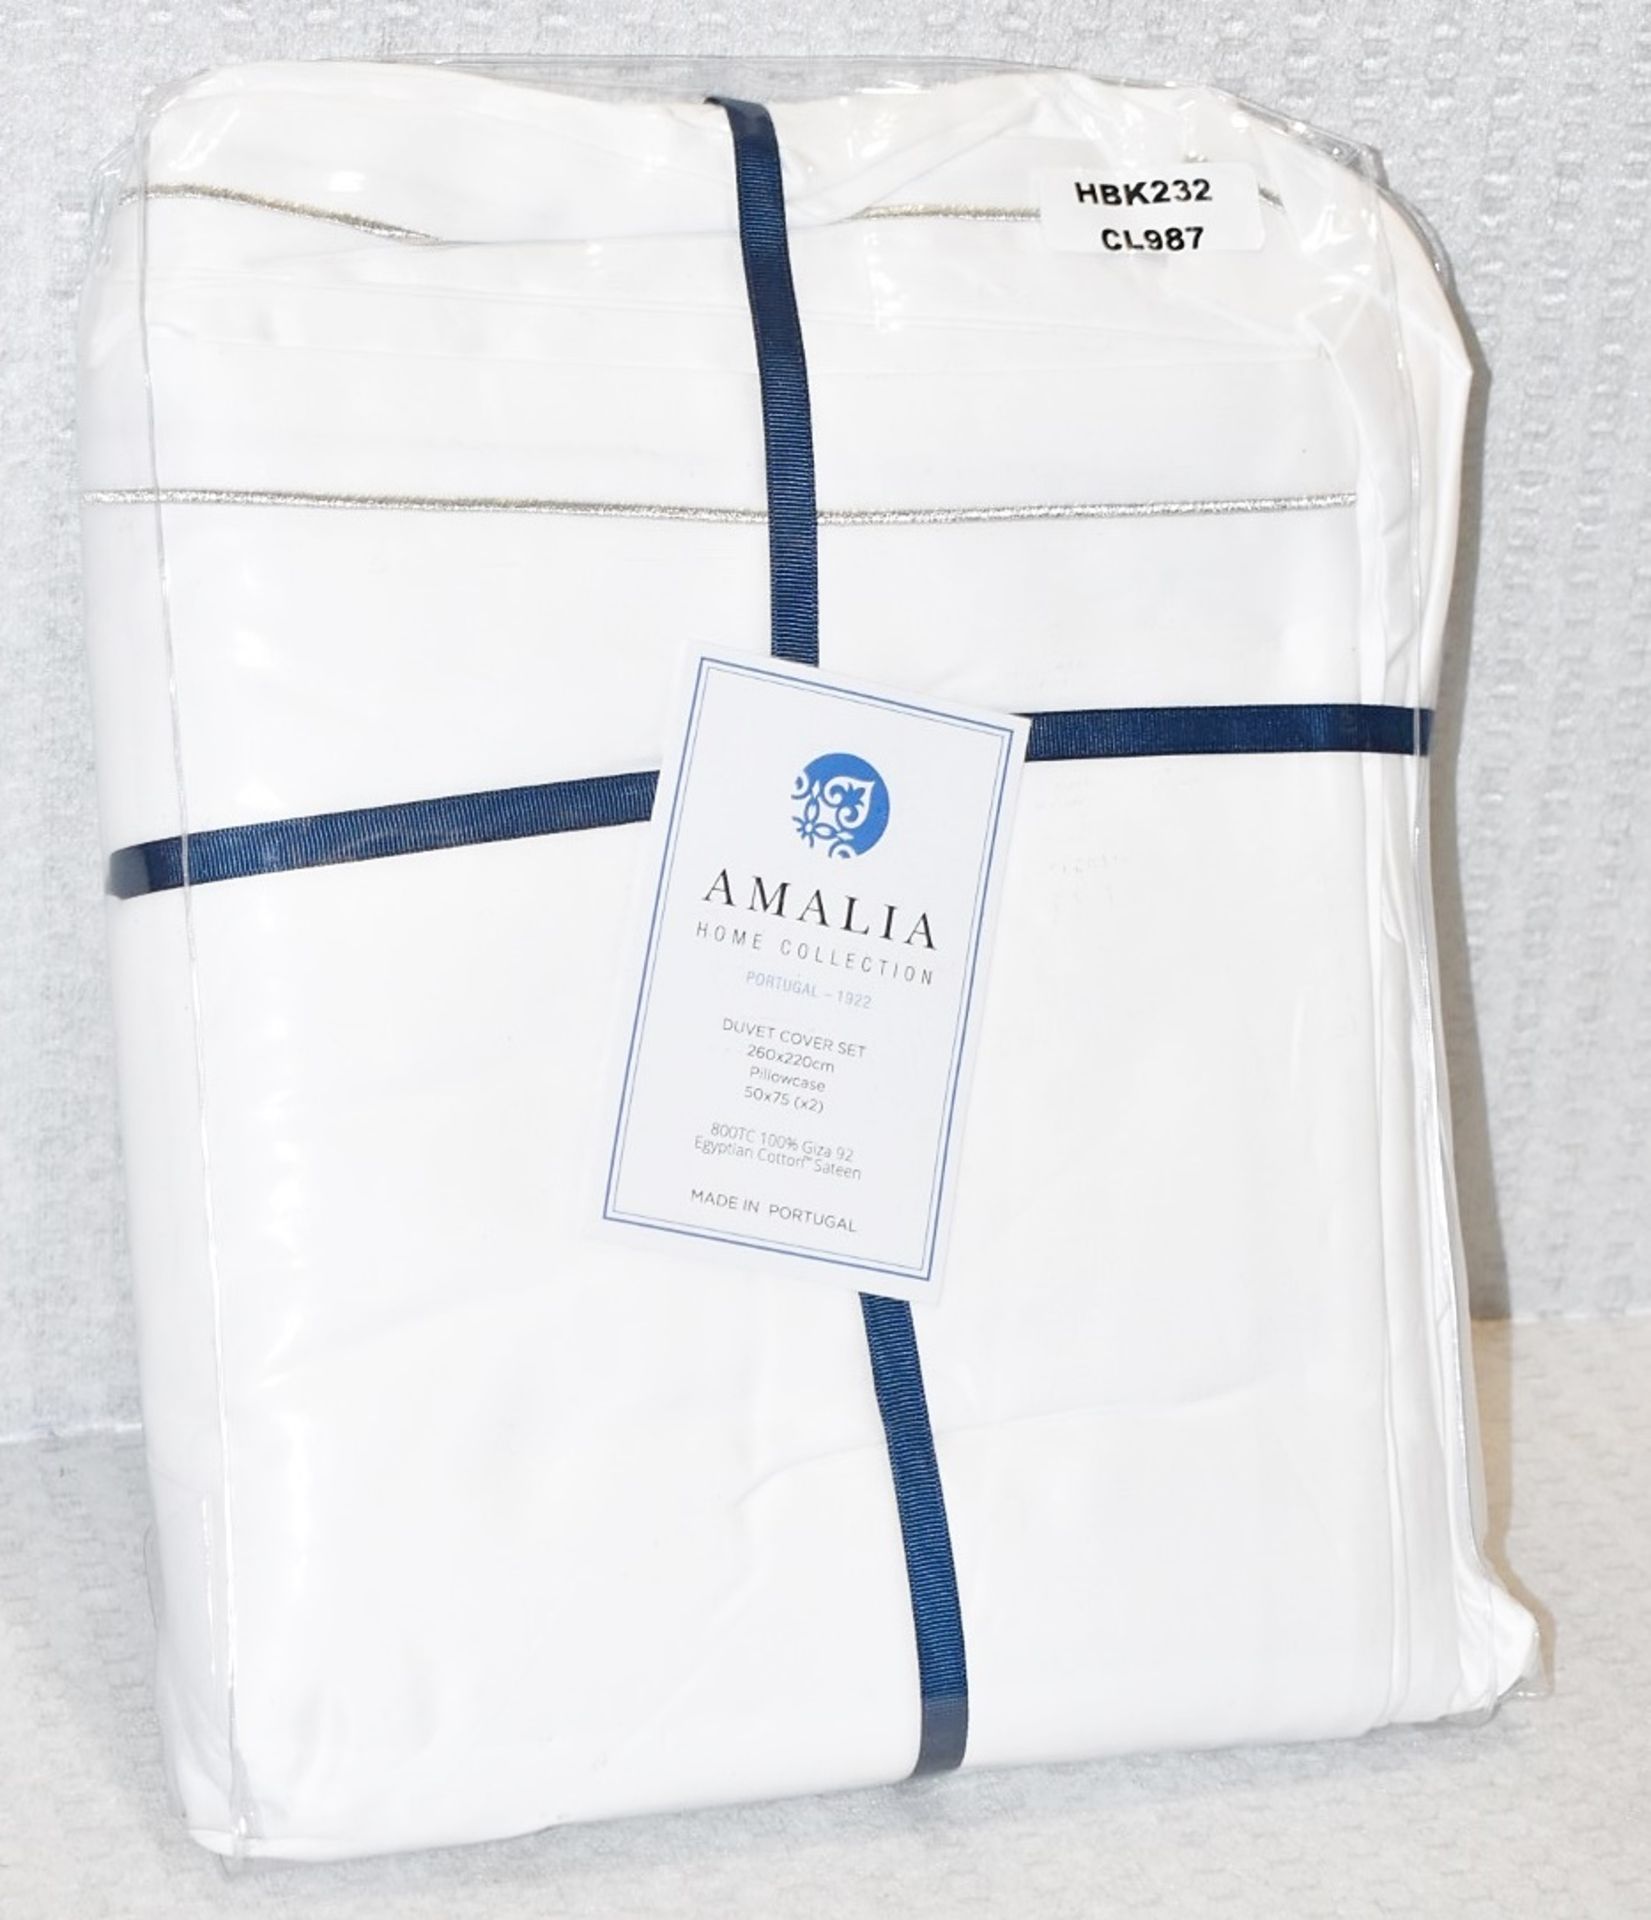 1 x AMALIA 'Dália' Luxury Egyptian Cotton Super King Duvet Cover and 2 x Pillowcases Set, in White - Image 2 of 6